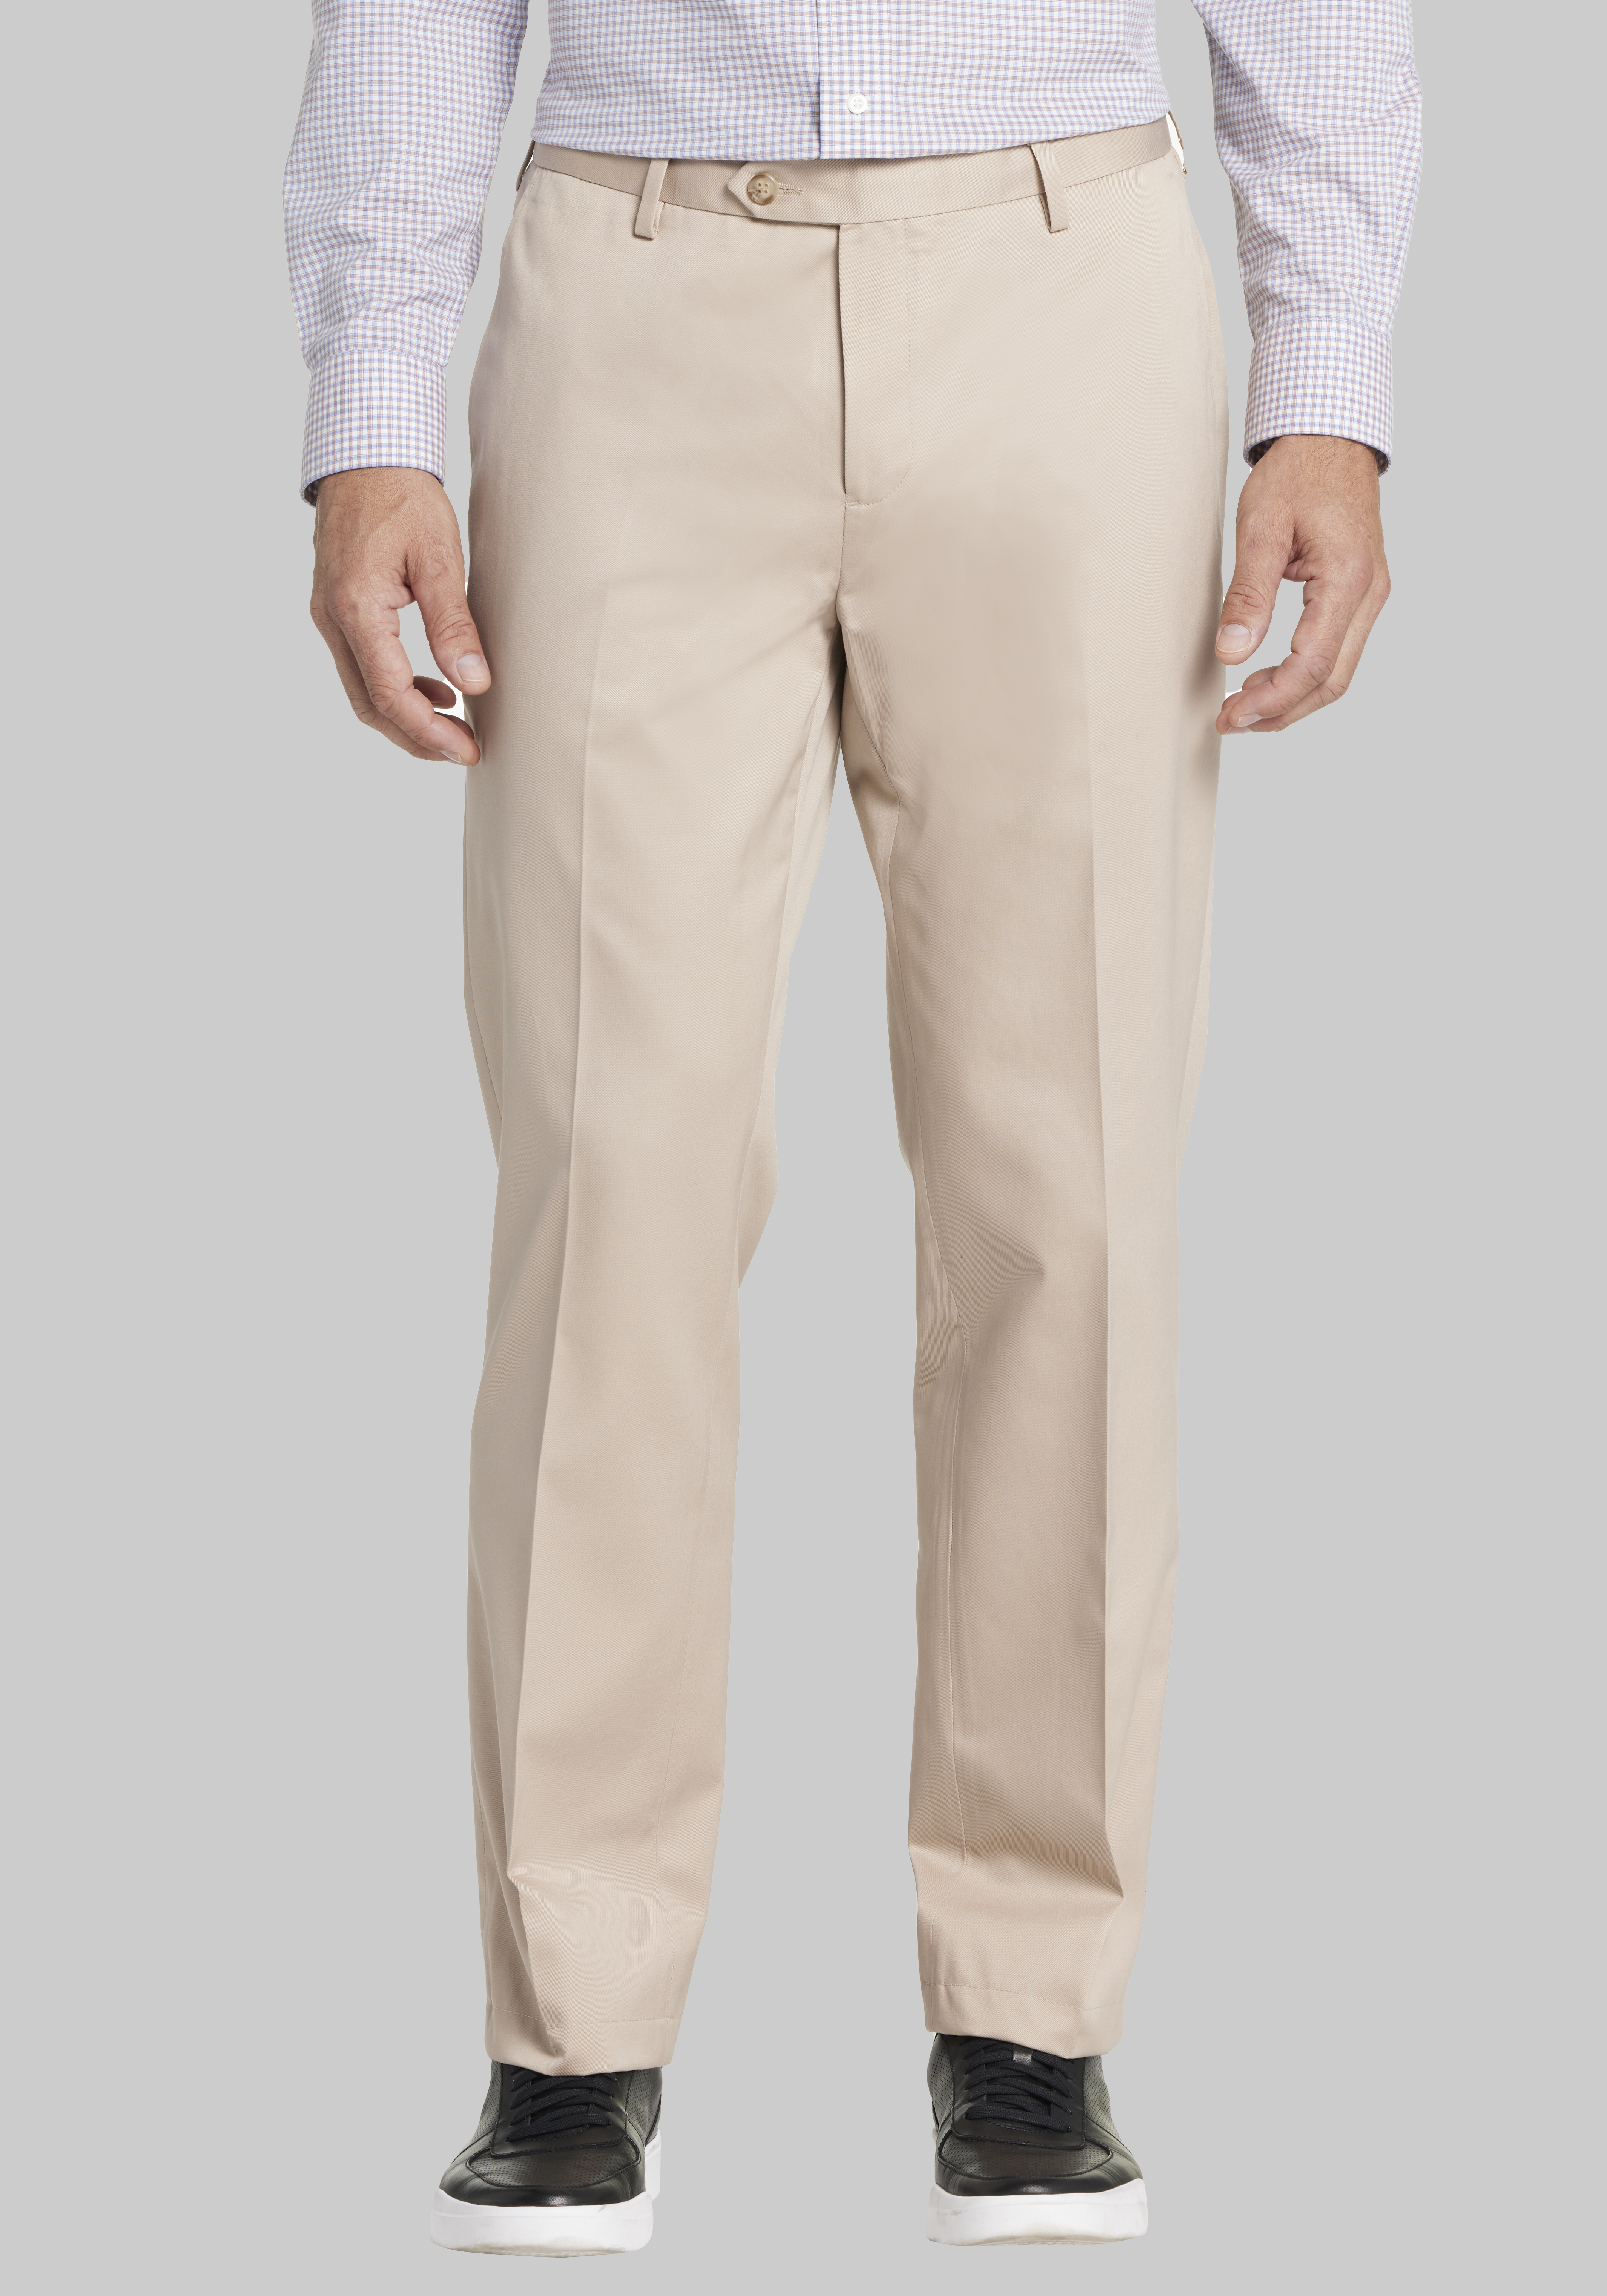 J1 STRAIGHT Leg Five-Pocket Pants for Tall Men in Desert Khaki